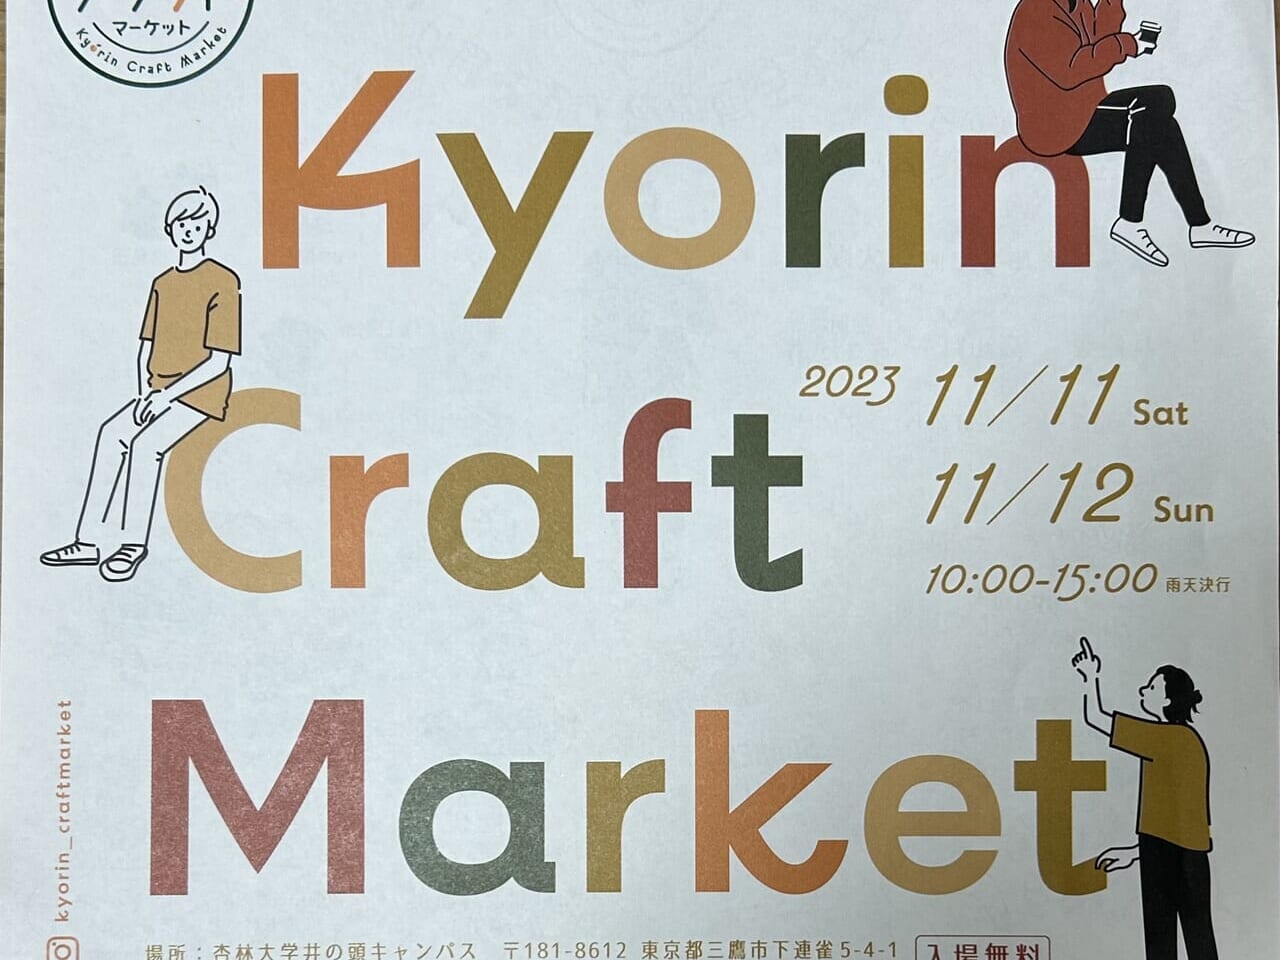 KyorinCraftMarketのチラシ